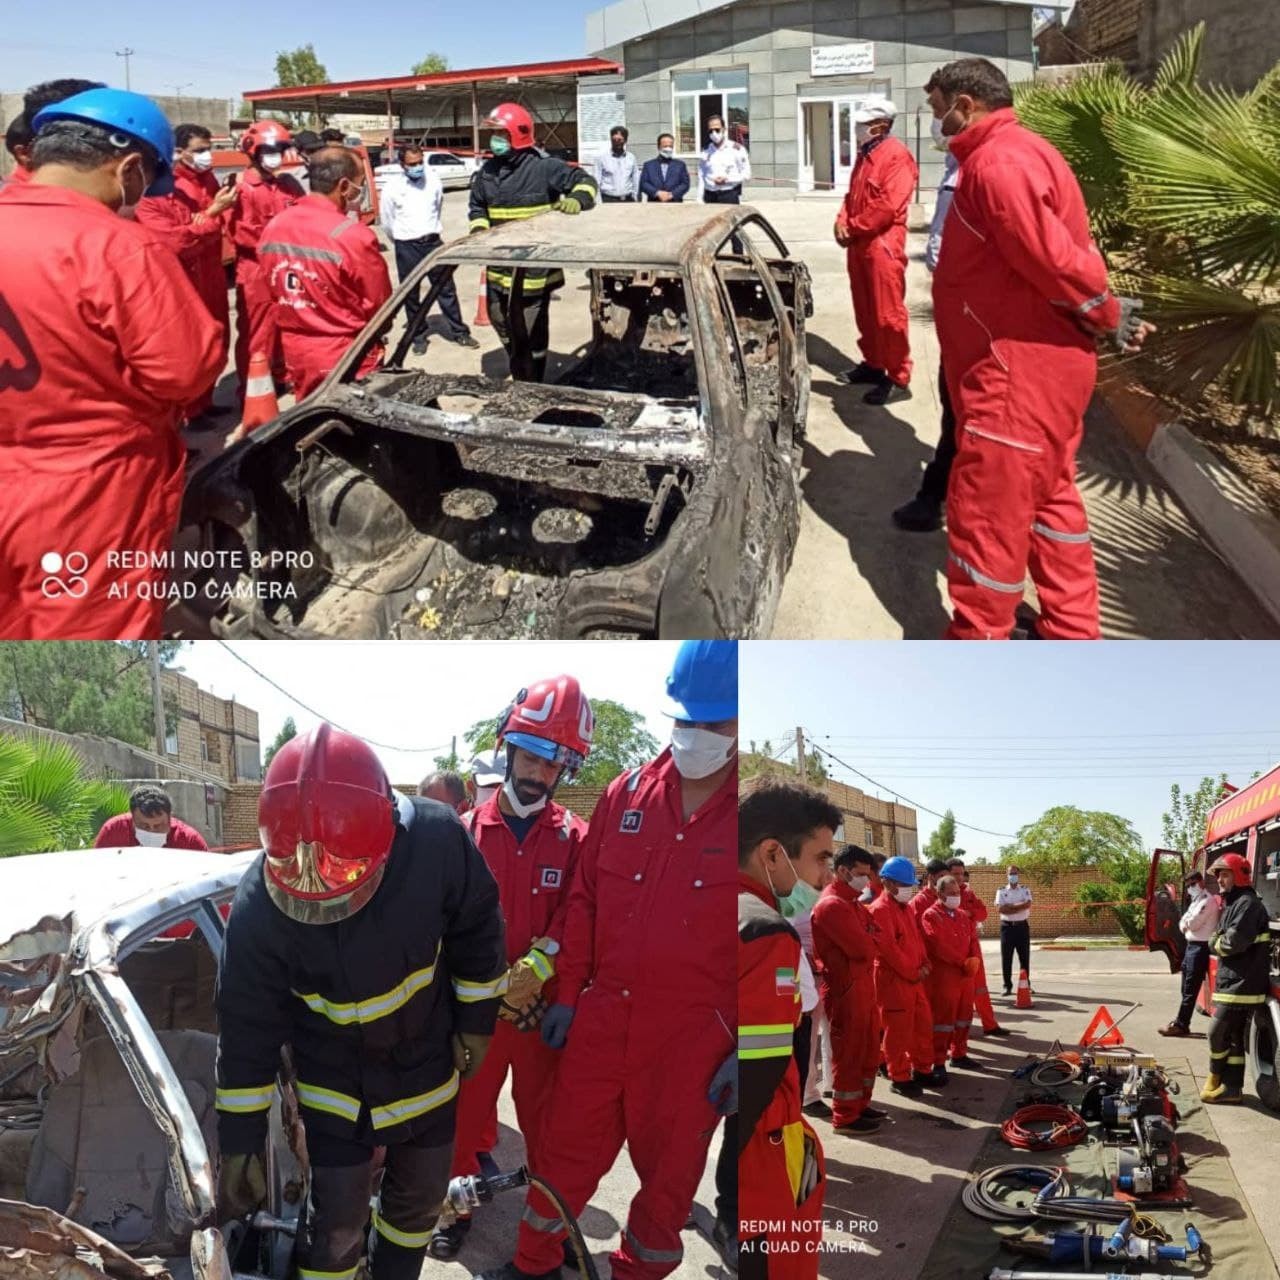 سومین دوره آموزشی متوالی تخصصی و مهارتی امدادونجات تصادفات جاده ای ویژه آتش نشانان خراسان رضوی برگزار گردید.